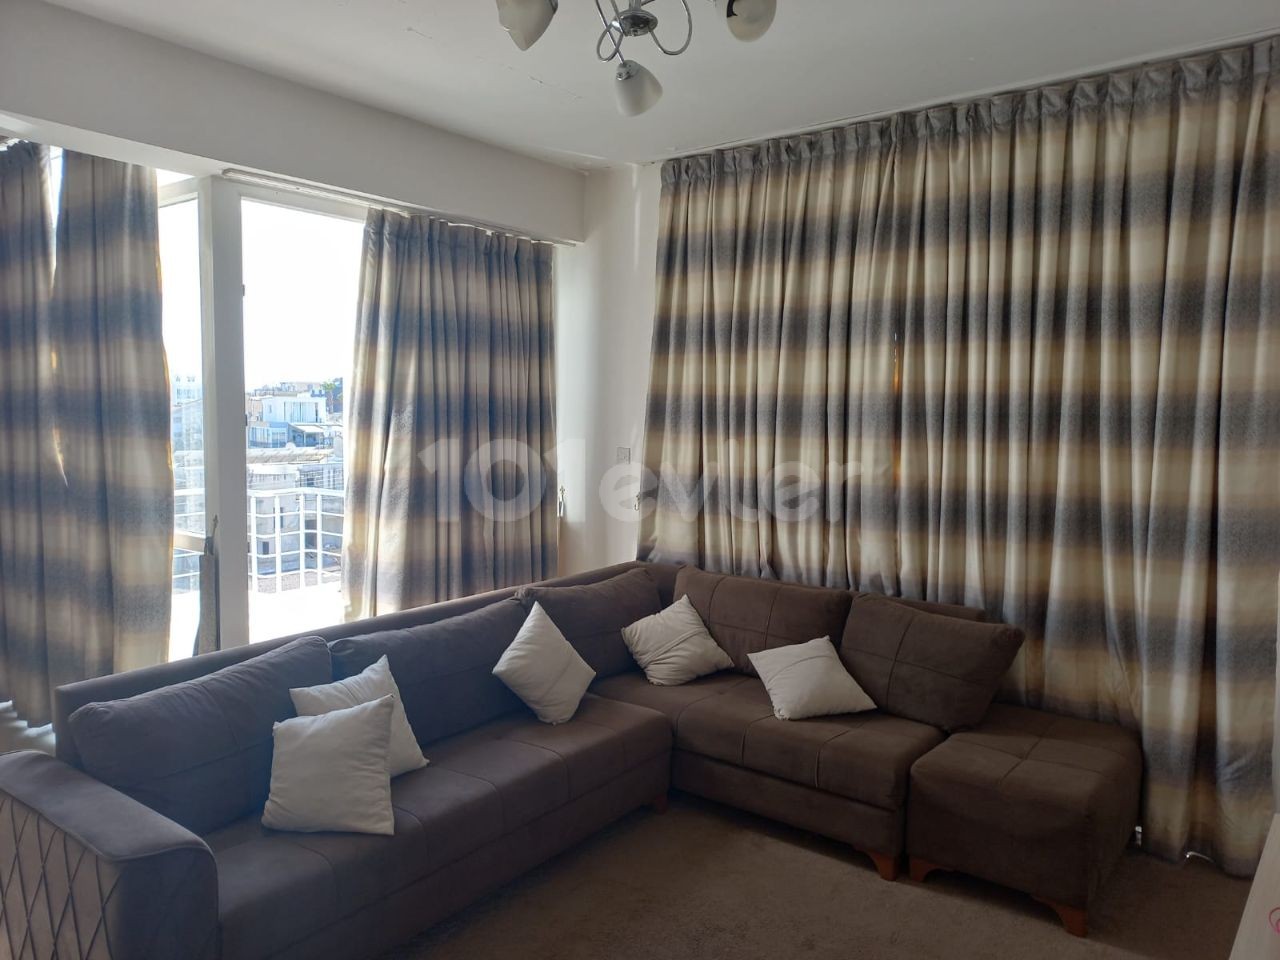 2+1 Furnished Apartment for Sale in Gönyelide stg 56000 